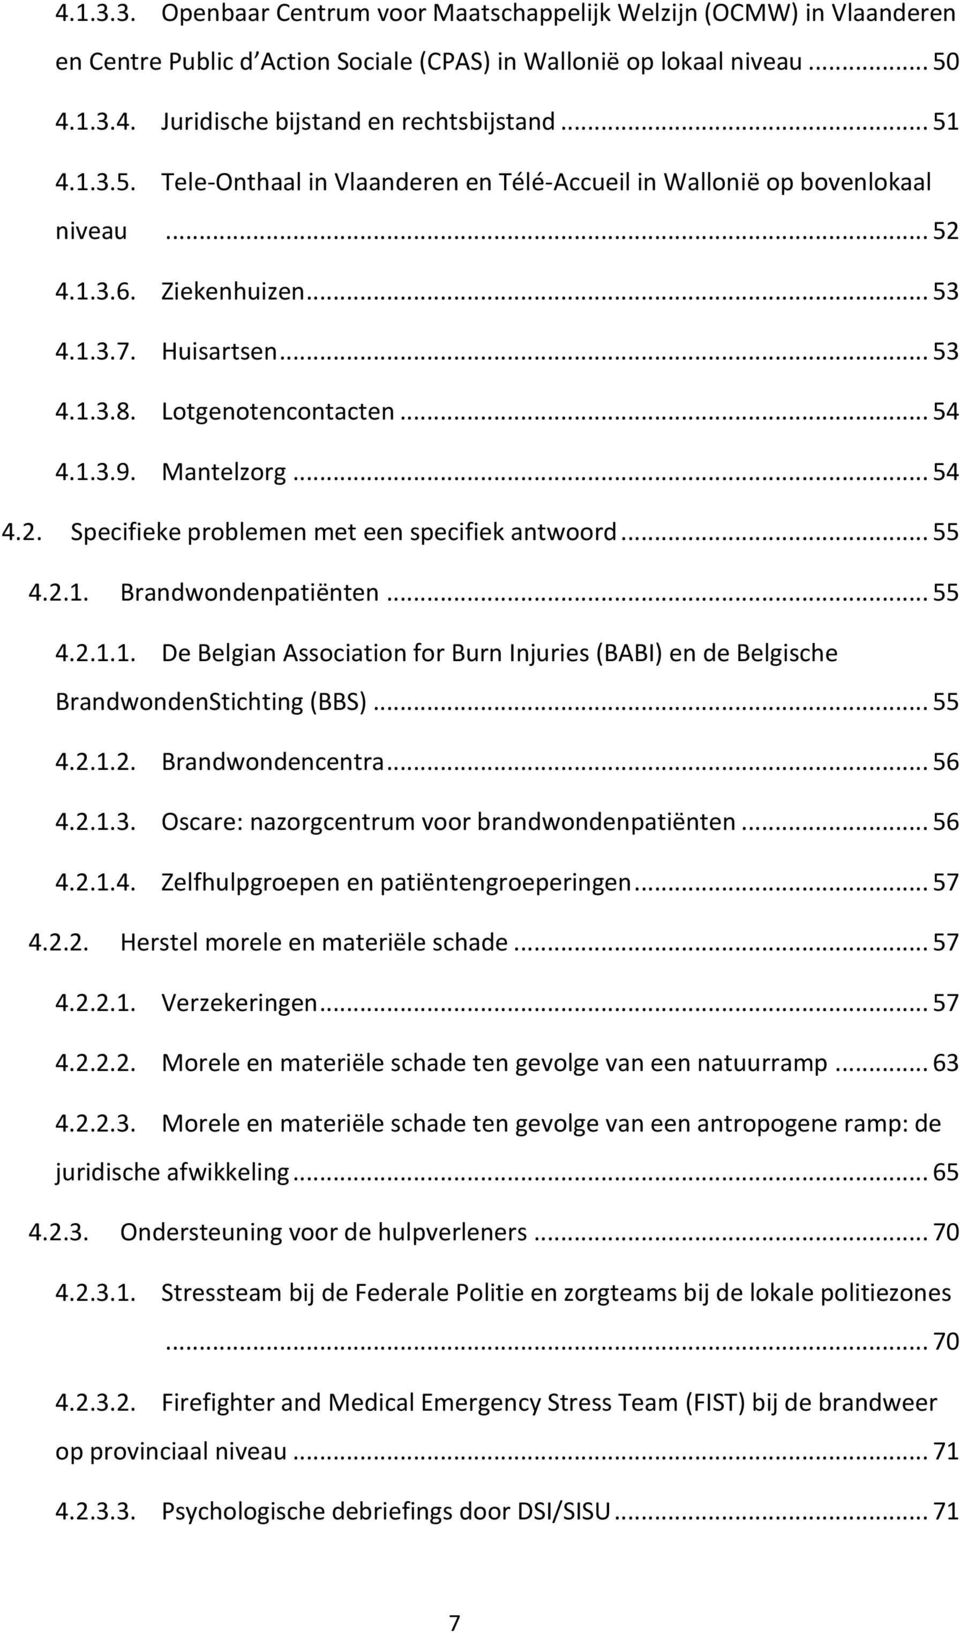 Mantelzorg... 54 4.2. Specifieke problemen met een specifiek antwoord... 55 4.2.1. Brandwondenpatiënten... 55 4.2.1.1. De Belgian Association for Burn Injuries (BABI) en de Belgische BrandwondenStichting (BBS).